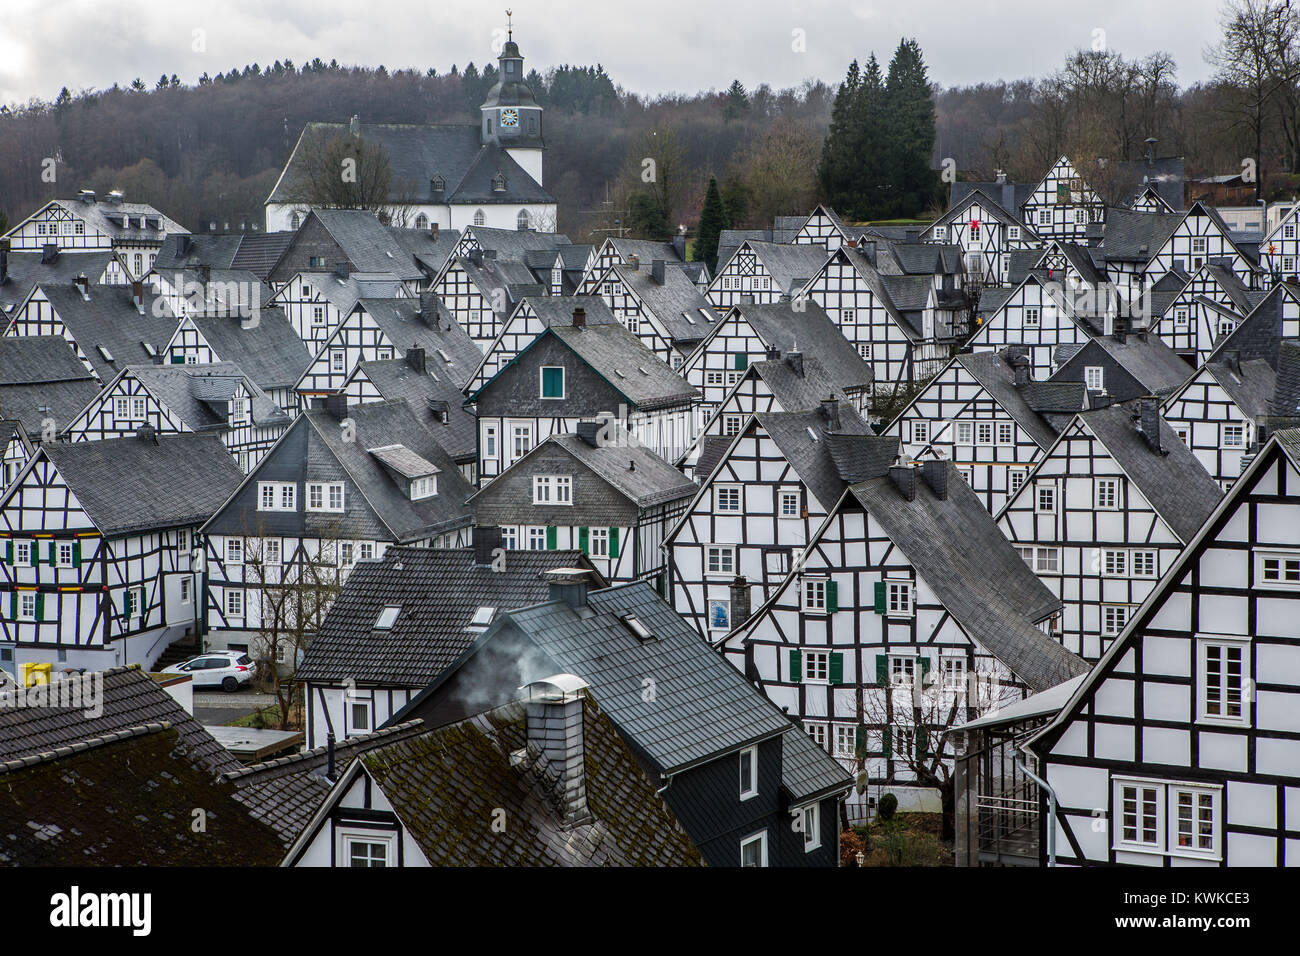 Historische Altstadt von Freudenberg, Nordrhein-Westfalen, Deutschland, mit Fachwerkhäusern, Alter Flecken Stockfoto